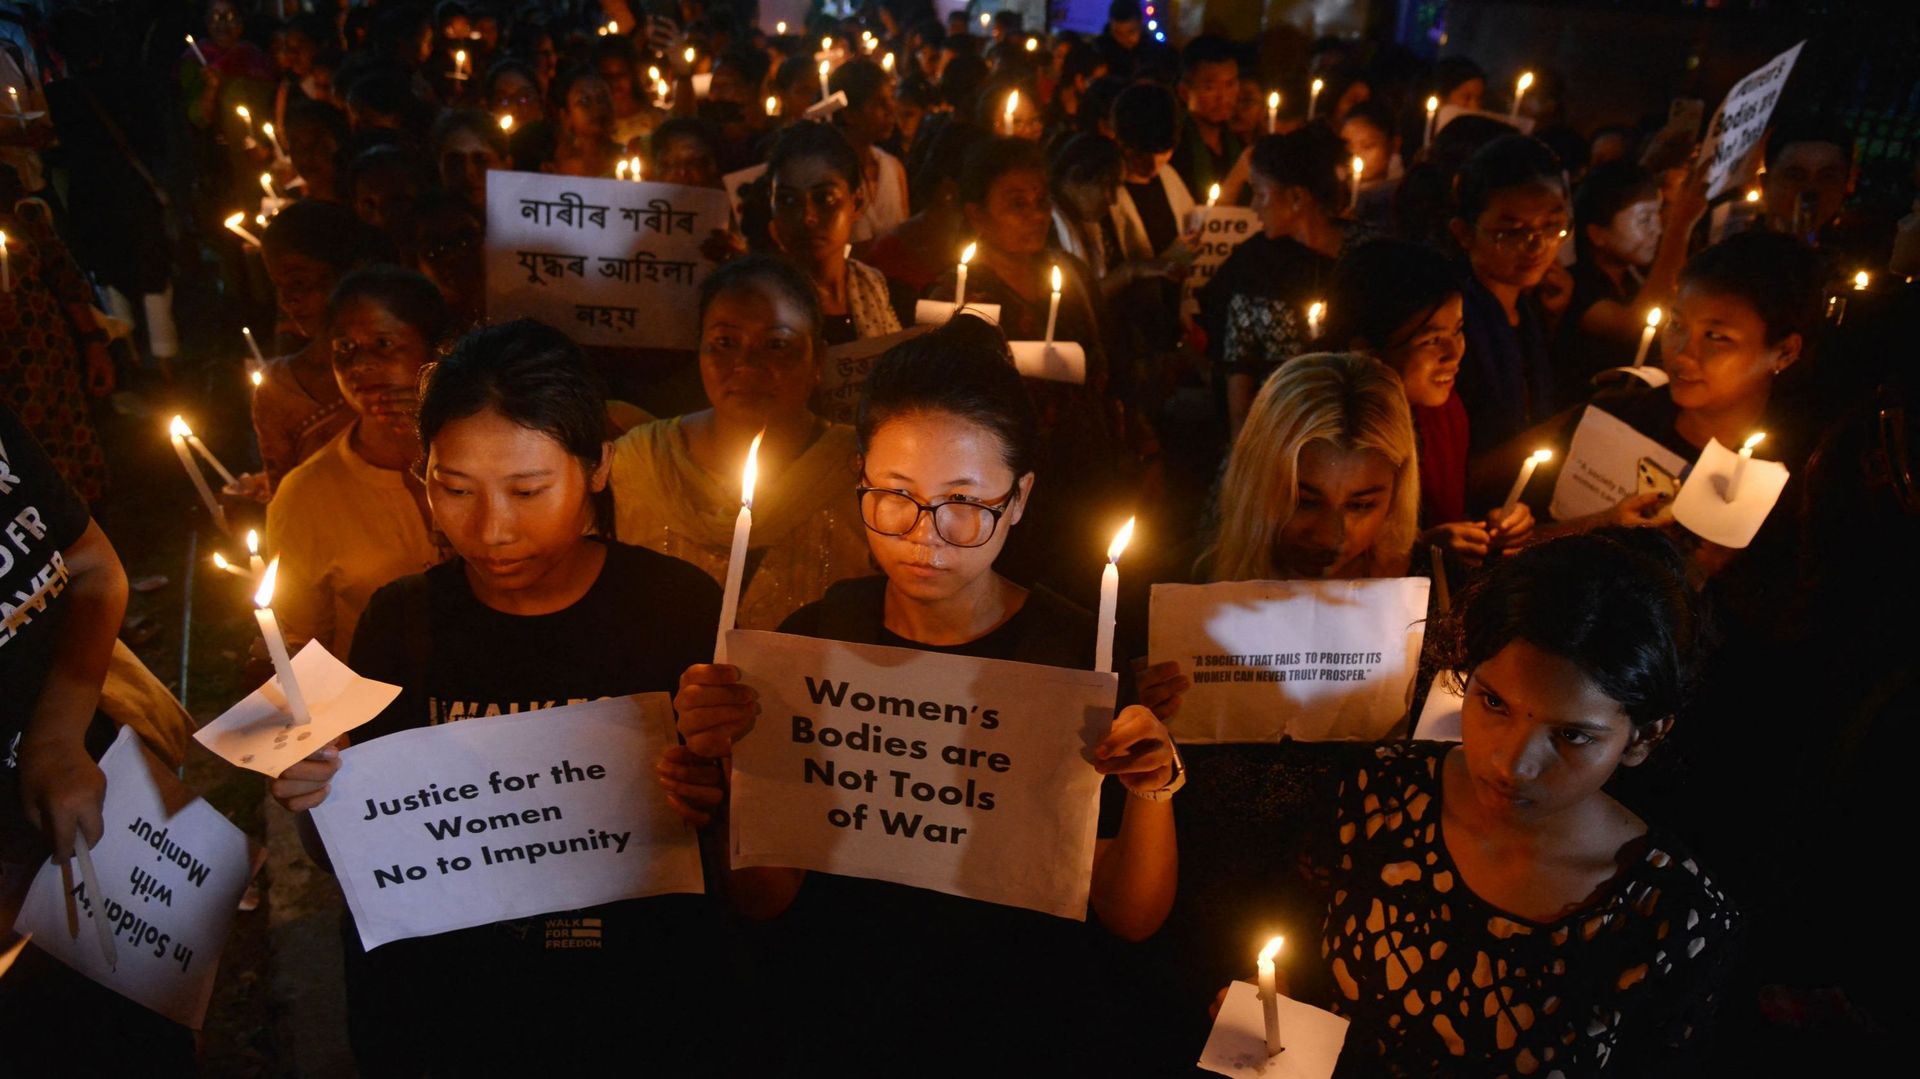 Des manifestants participent à une manifestation à la lueur des bougies contre les violences sexuelles à l'encontre des femmes et pour la paix dans le cadre des violences ethniques en cours dans l'État indien du Manipur, au nord-est du pays, à Guwahati, l